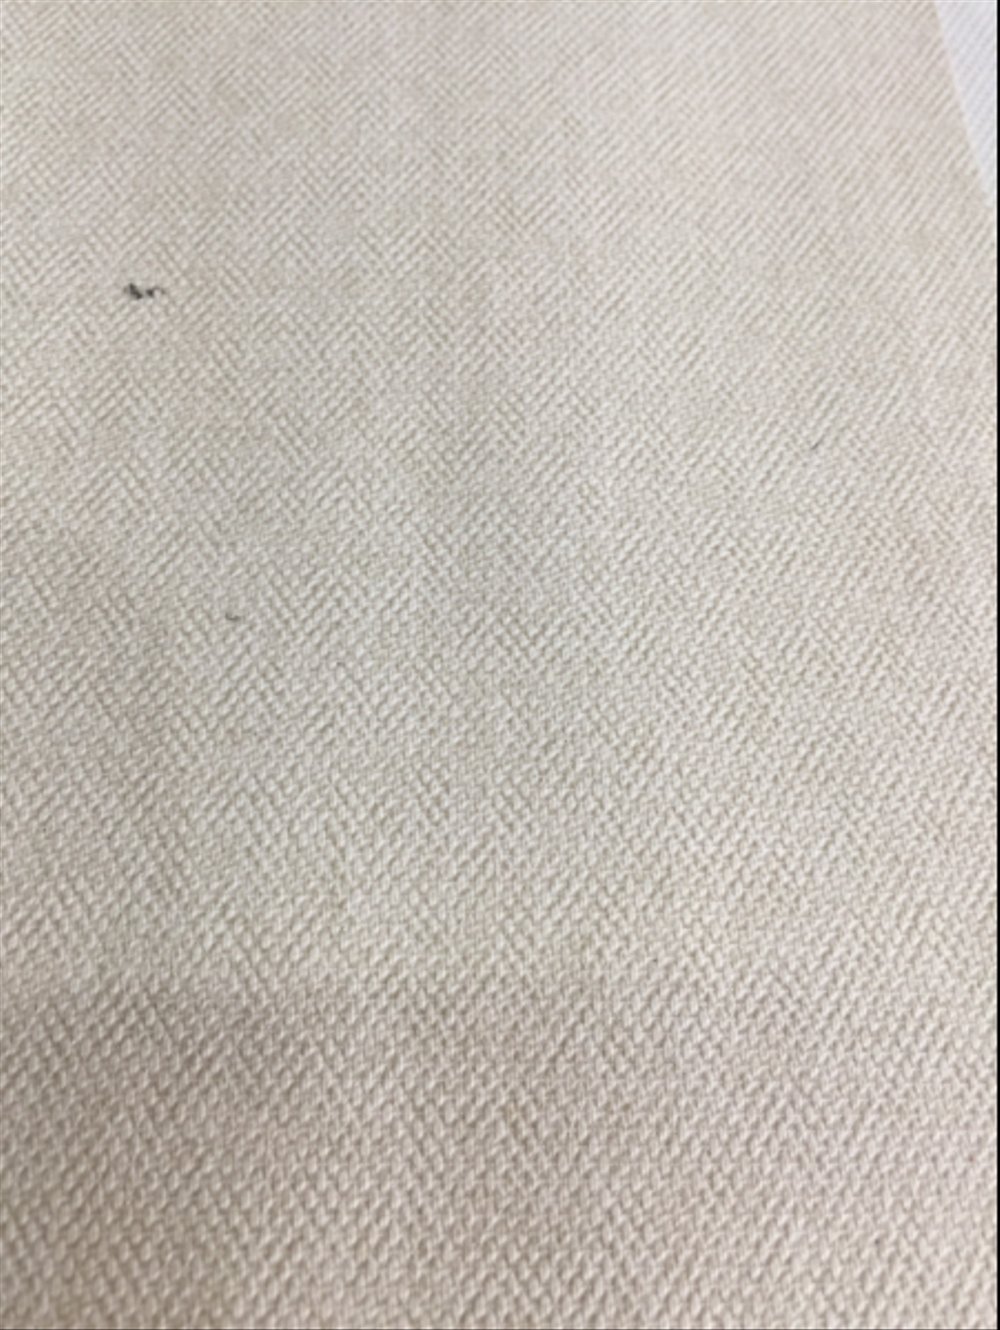 wallpaper warna coklat,beige,linen,textile,linens,woven fabric